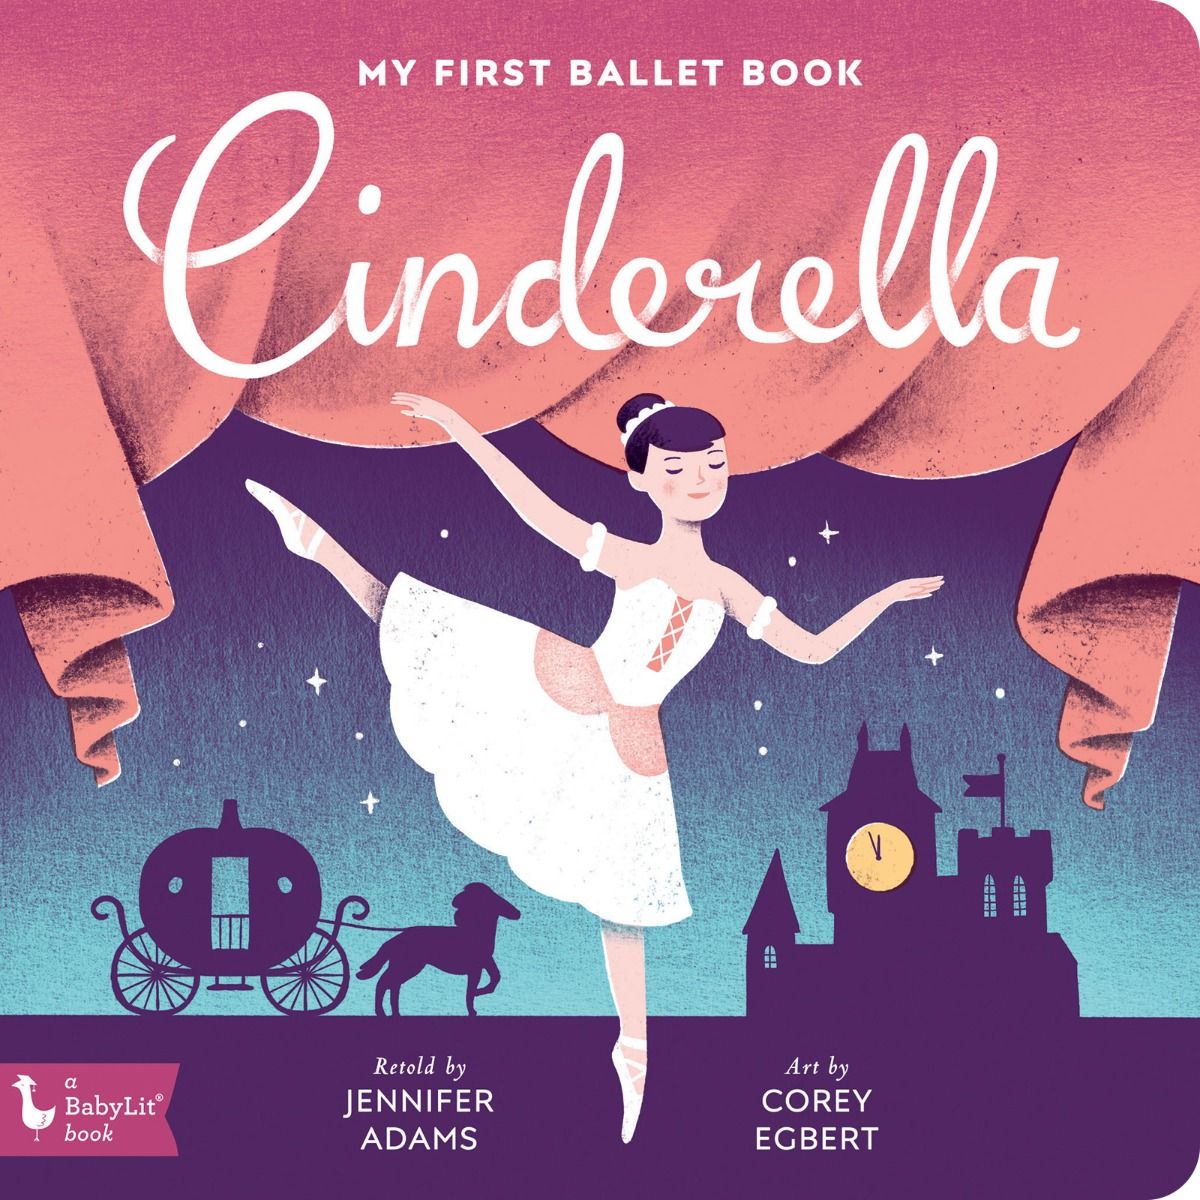 My First Ballet Book: Cinderella